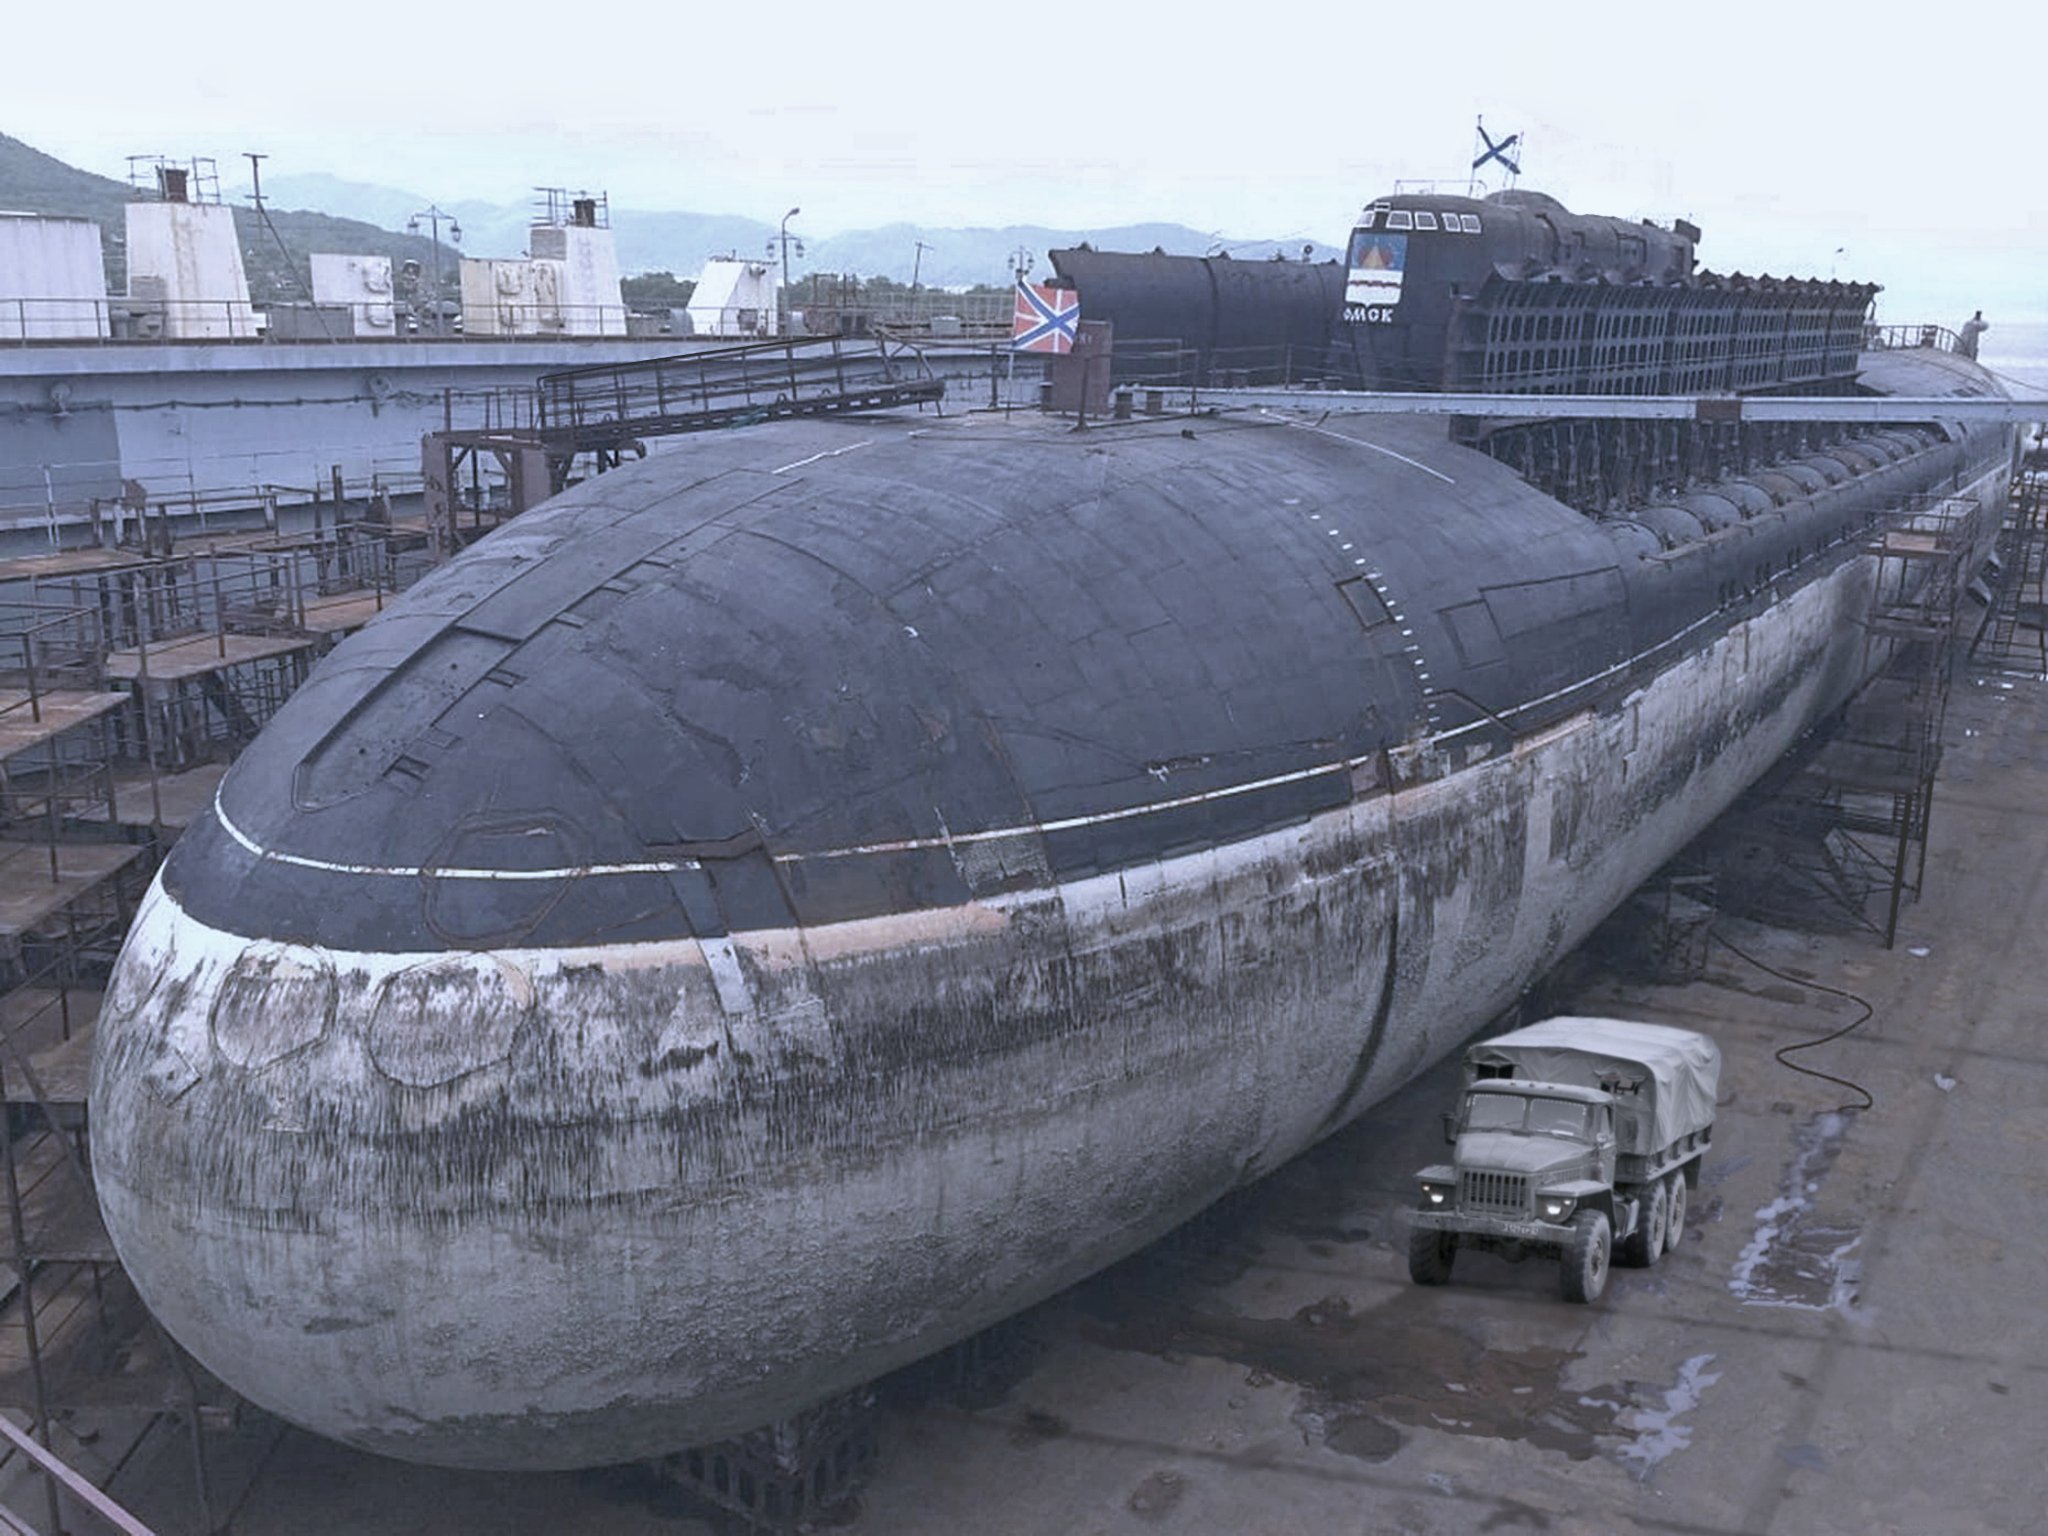 Пл материал. К-141 «Курск». Подводная лодка к-141 «Курск». Атомная подводная лодка Курск. АПРК К-141 Курск.